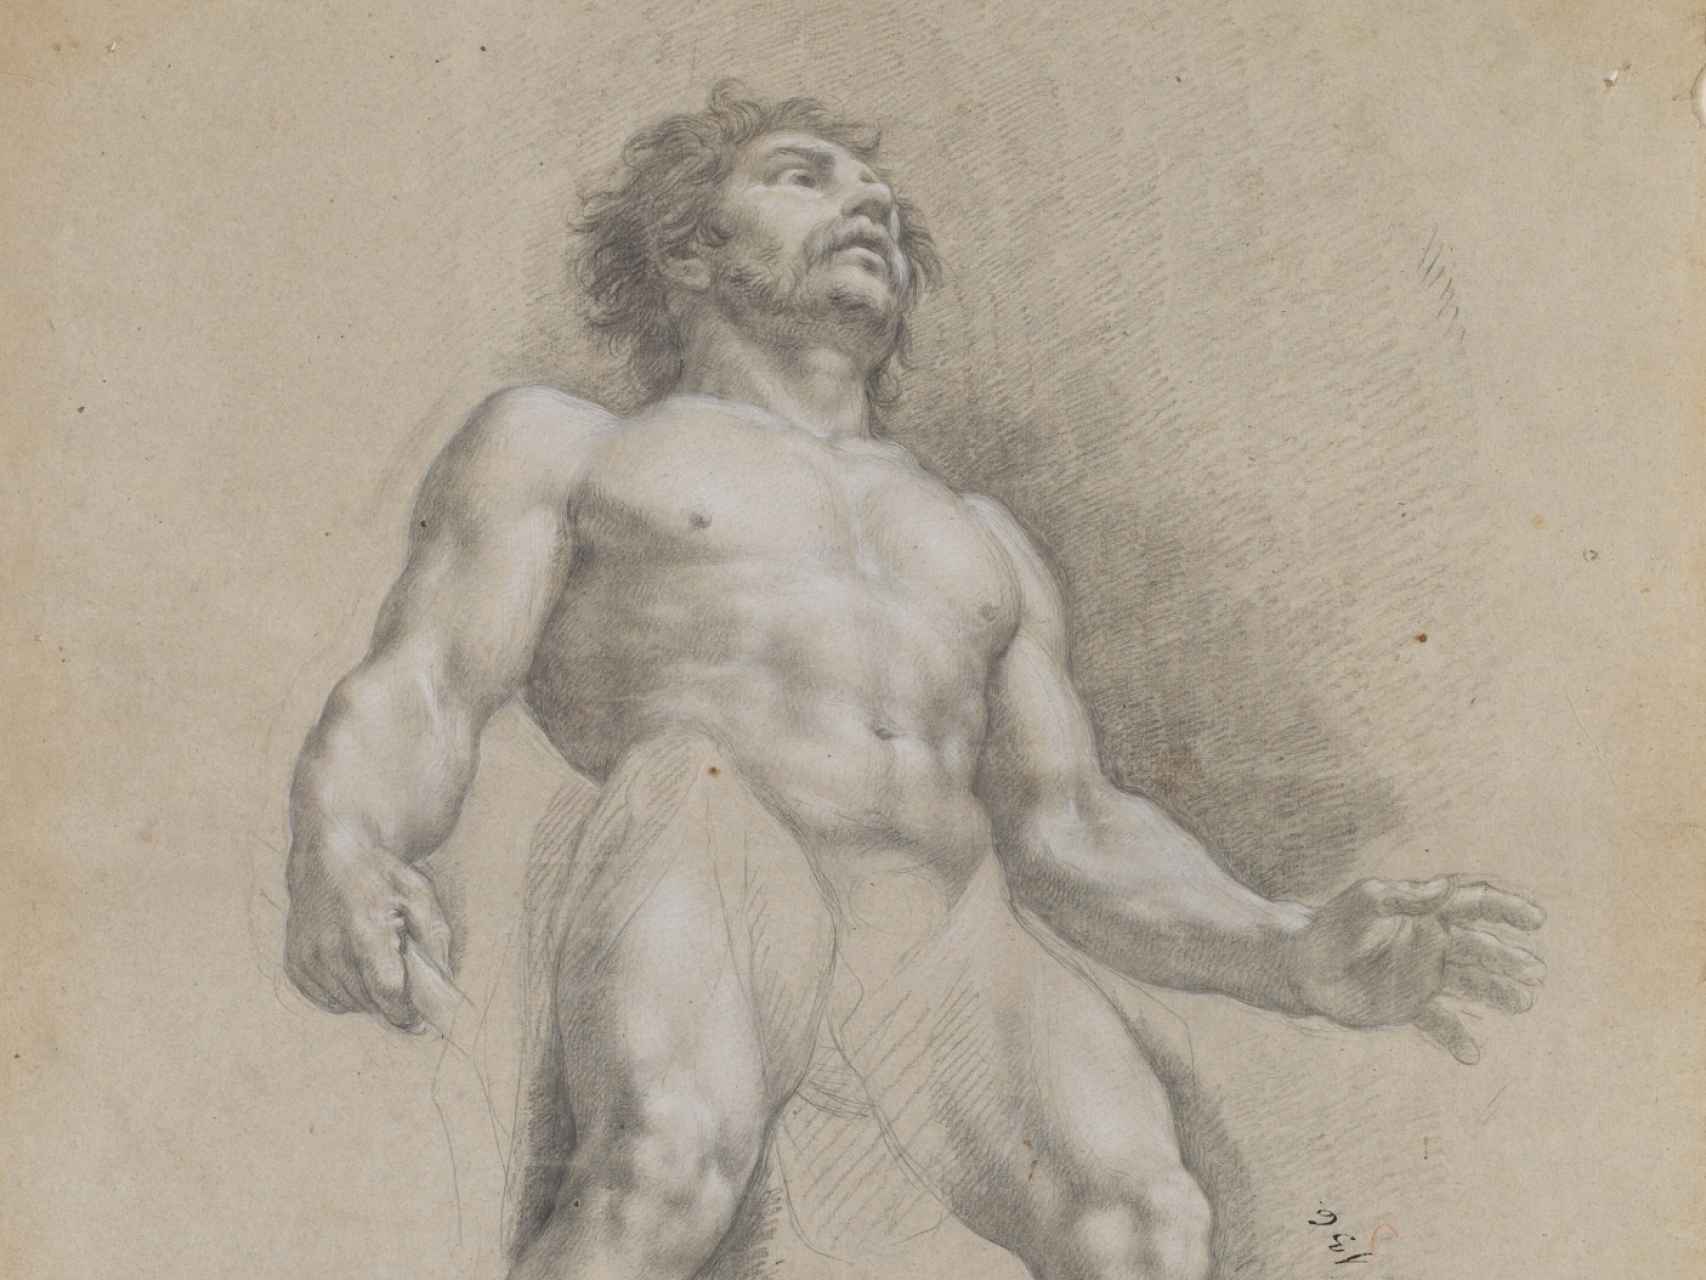 Vulcano, esposo de Venus, engañado con Marte. Dibujo de Bayeu.